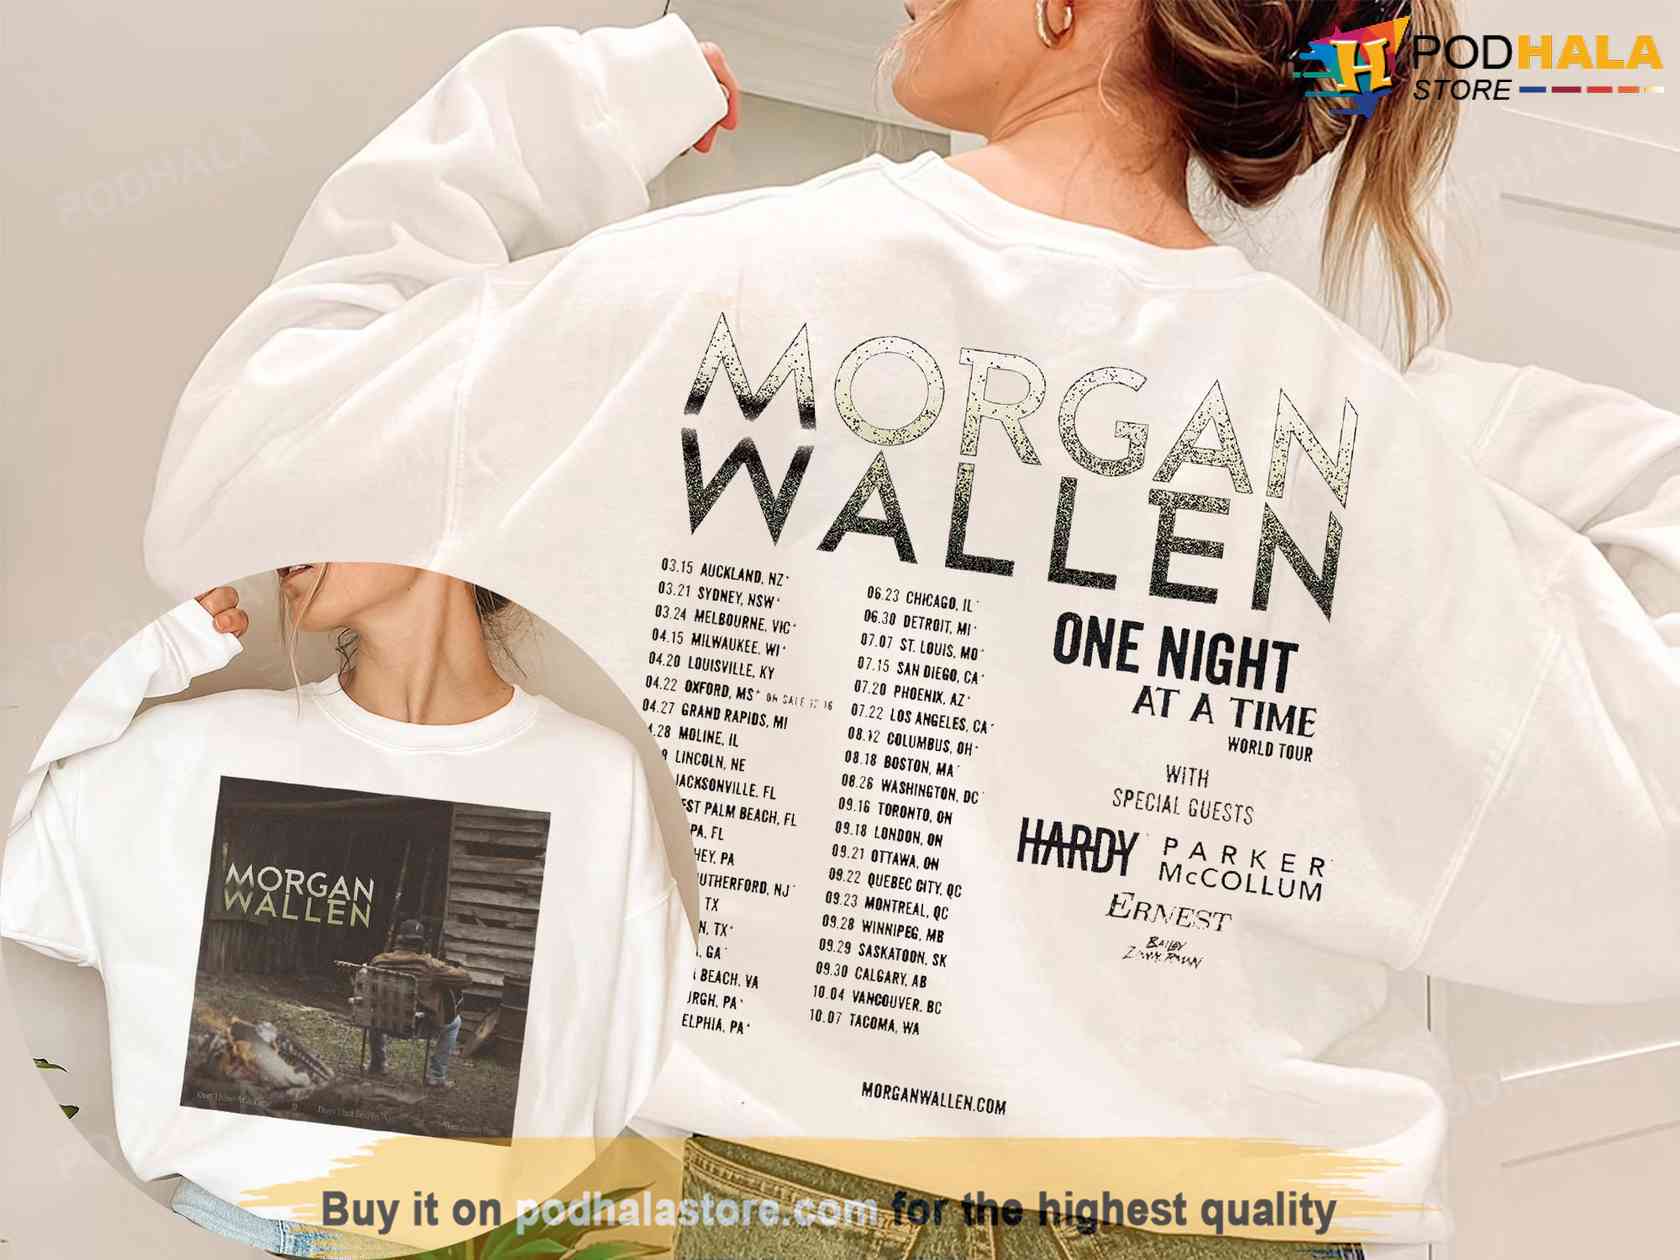 morgan wallen tour sale